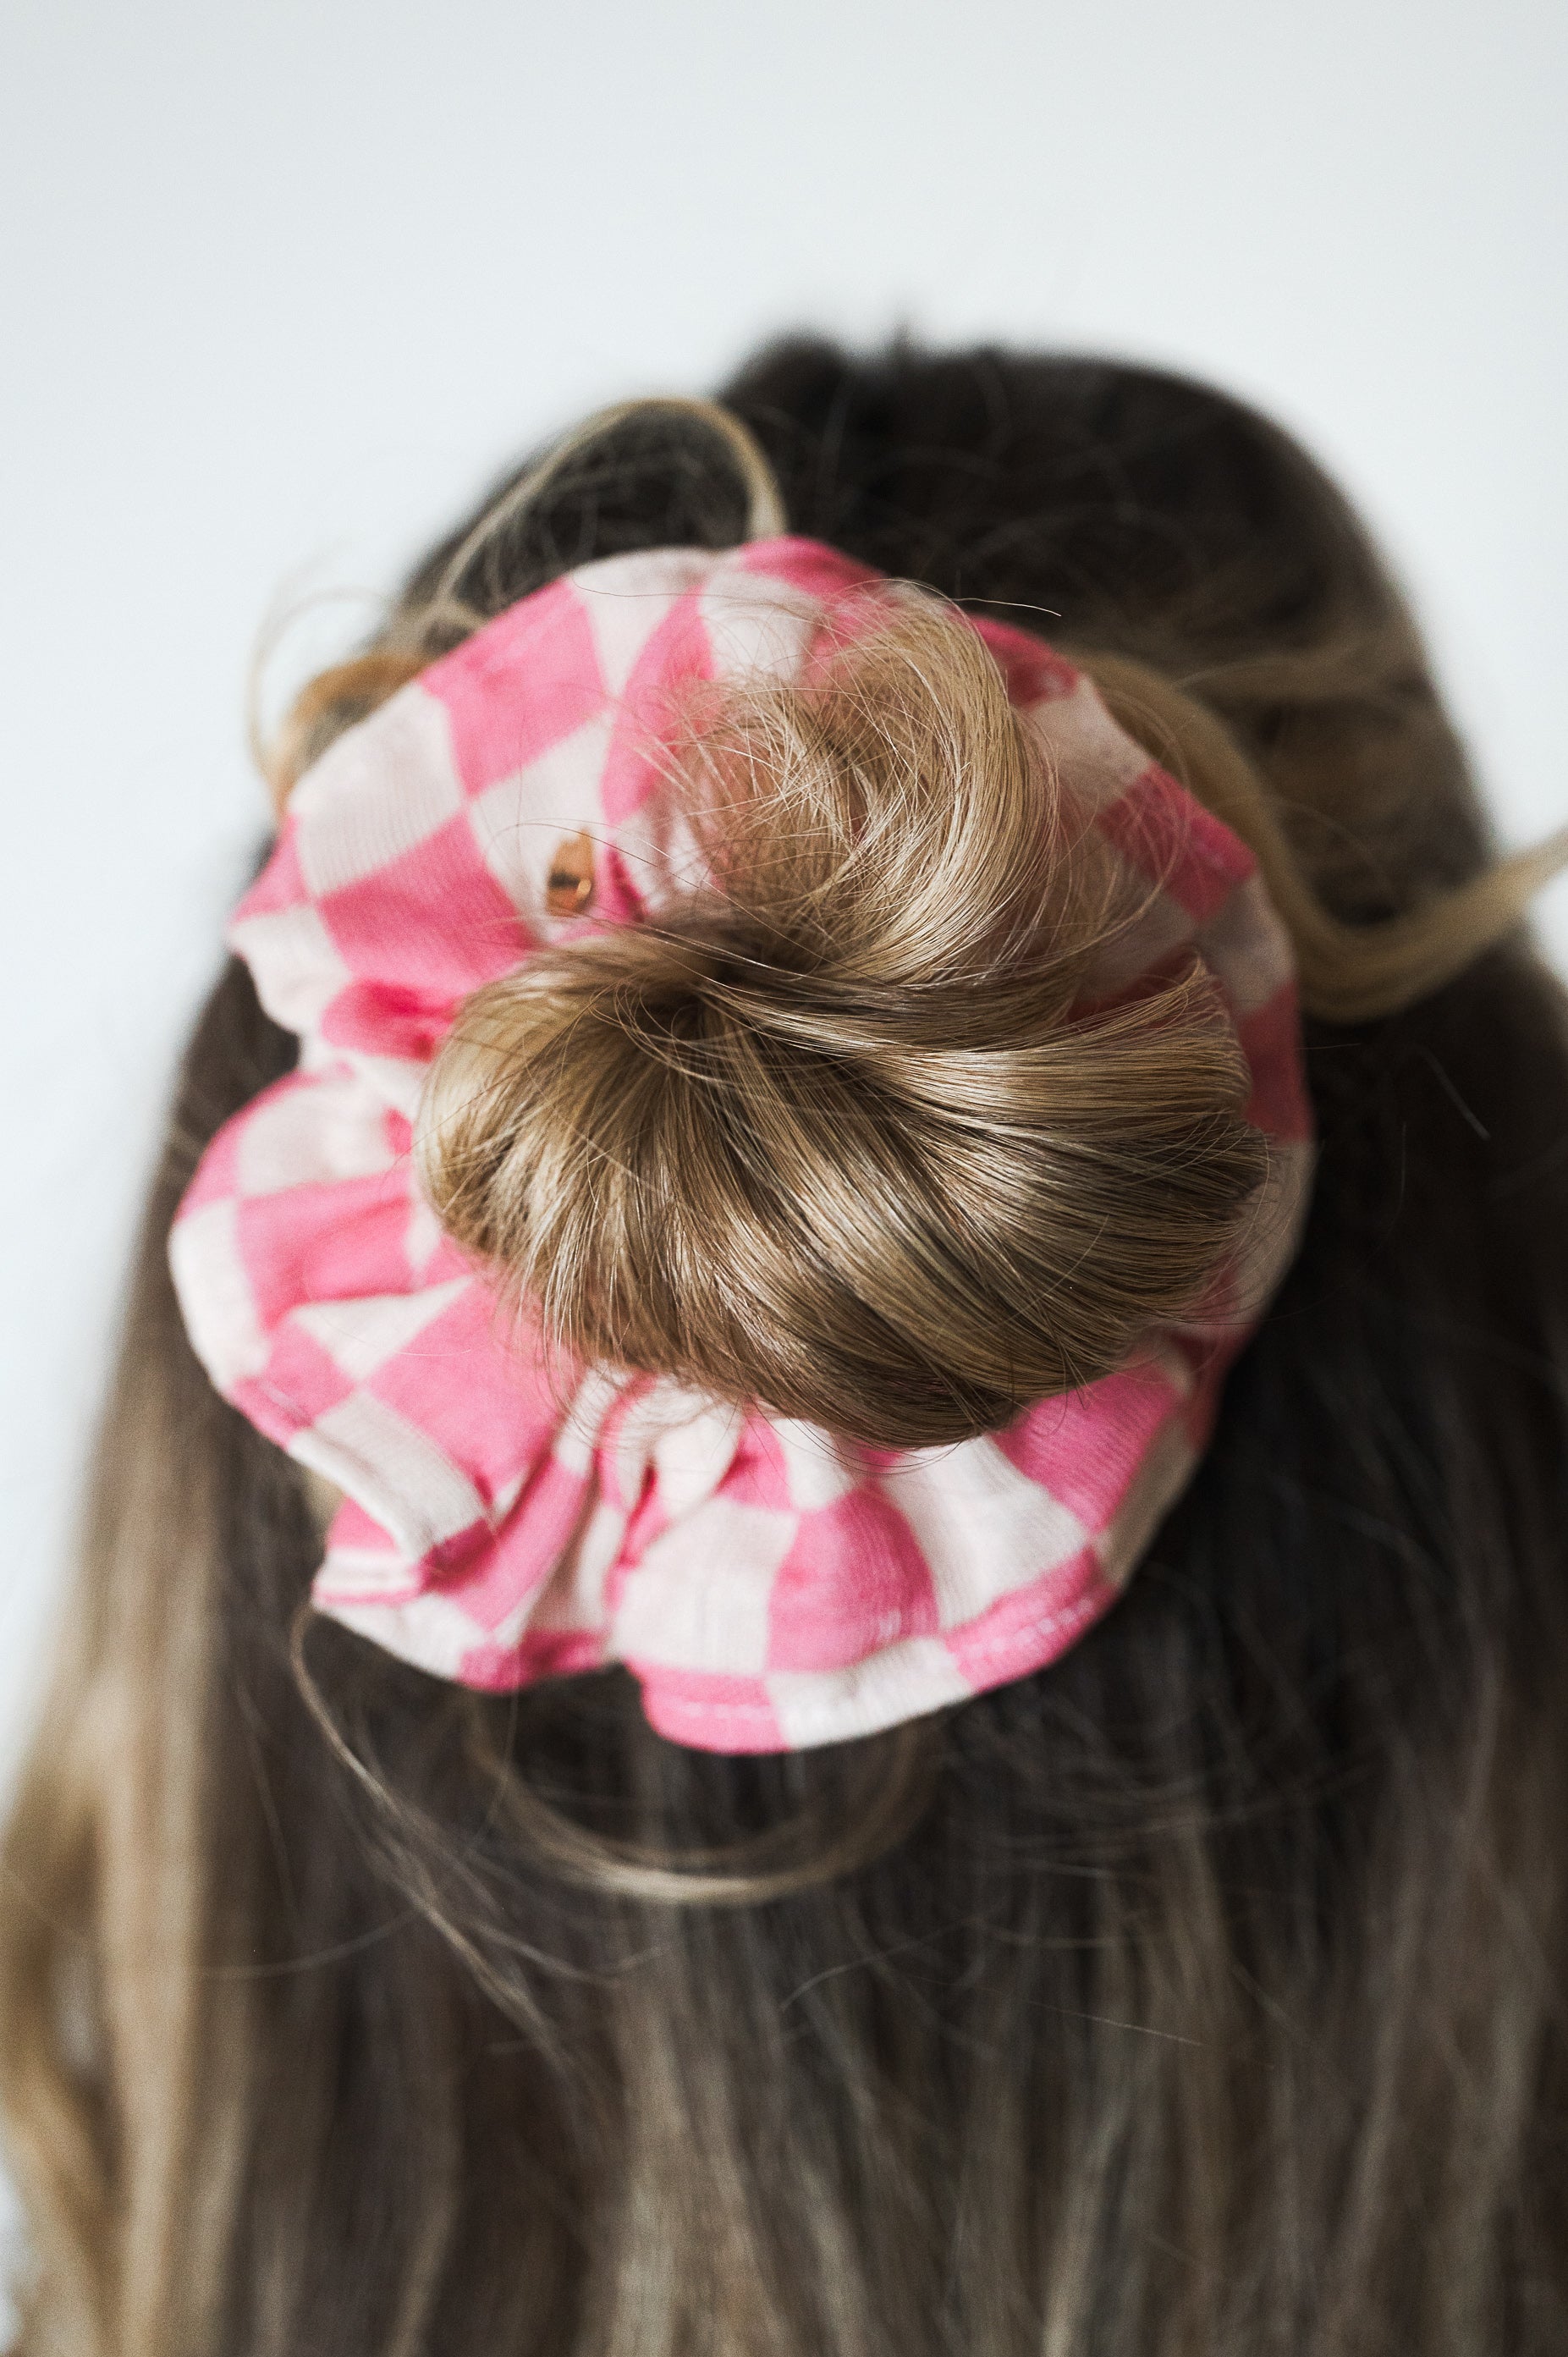 La photo montre un chignon de cheveux avec un chouchou à motif vichy rose et blanc. Les cheveux semblent être de couleur châtain clair. La photo est prise de dos et on ne voit pas le visage de la personne.